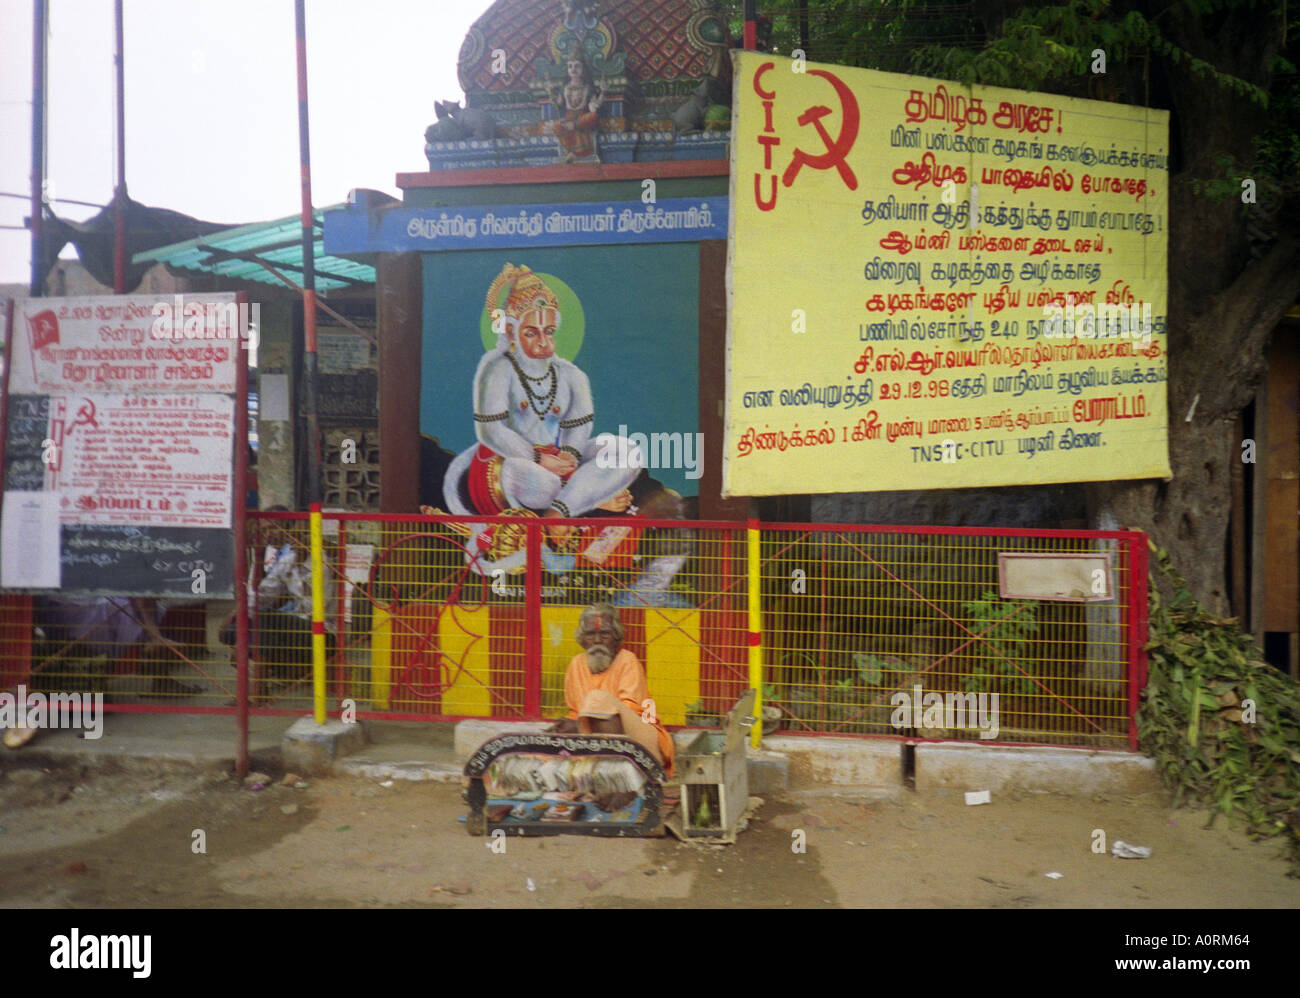 Barbe blanche sage sénile de l'homme hindou typique en vêtements colorés siéger par grand signe communiste Palani Tamil Nadu Inde Asie du Sud Banque D'Images